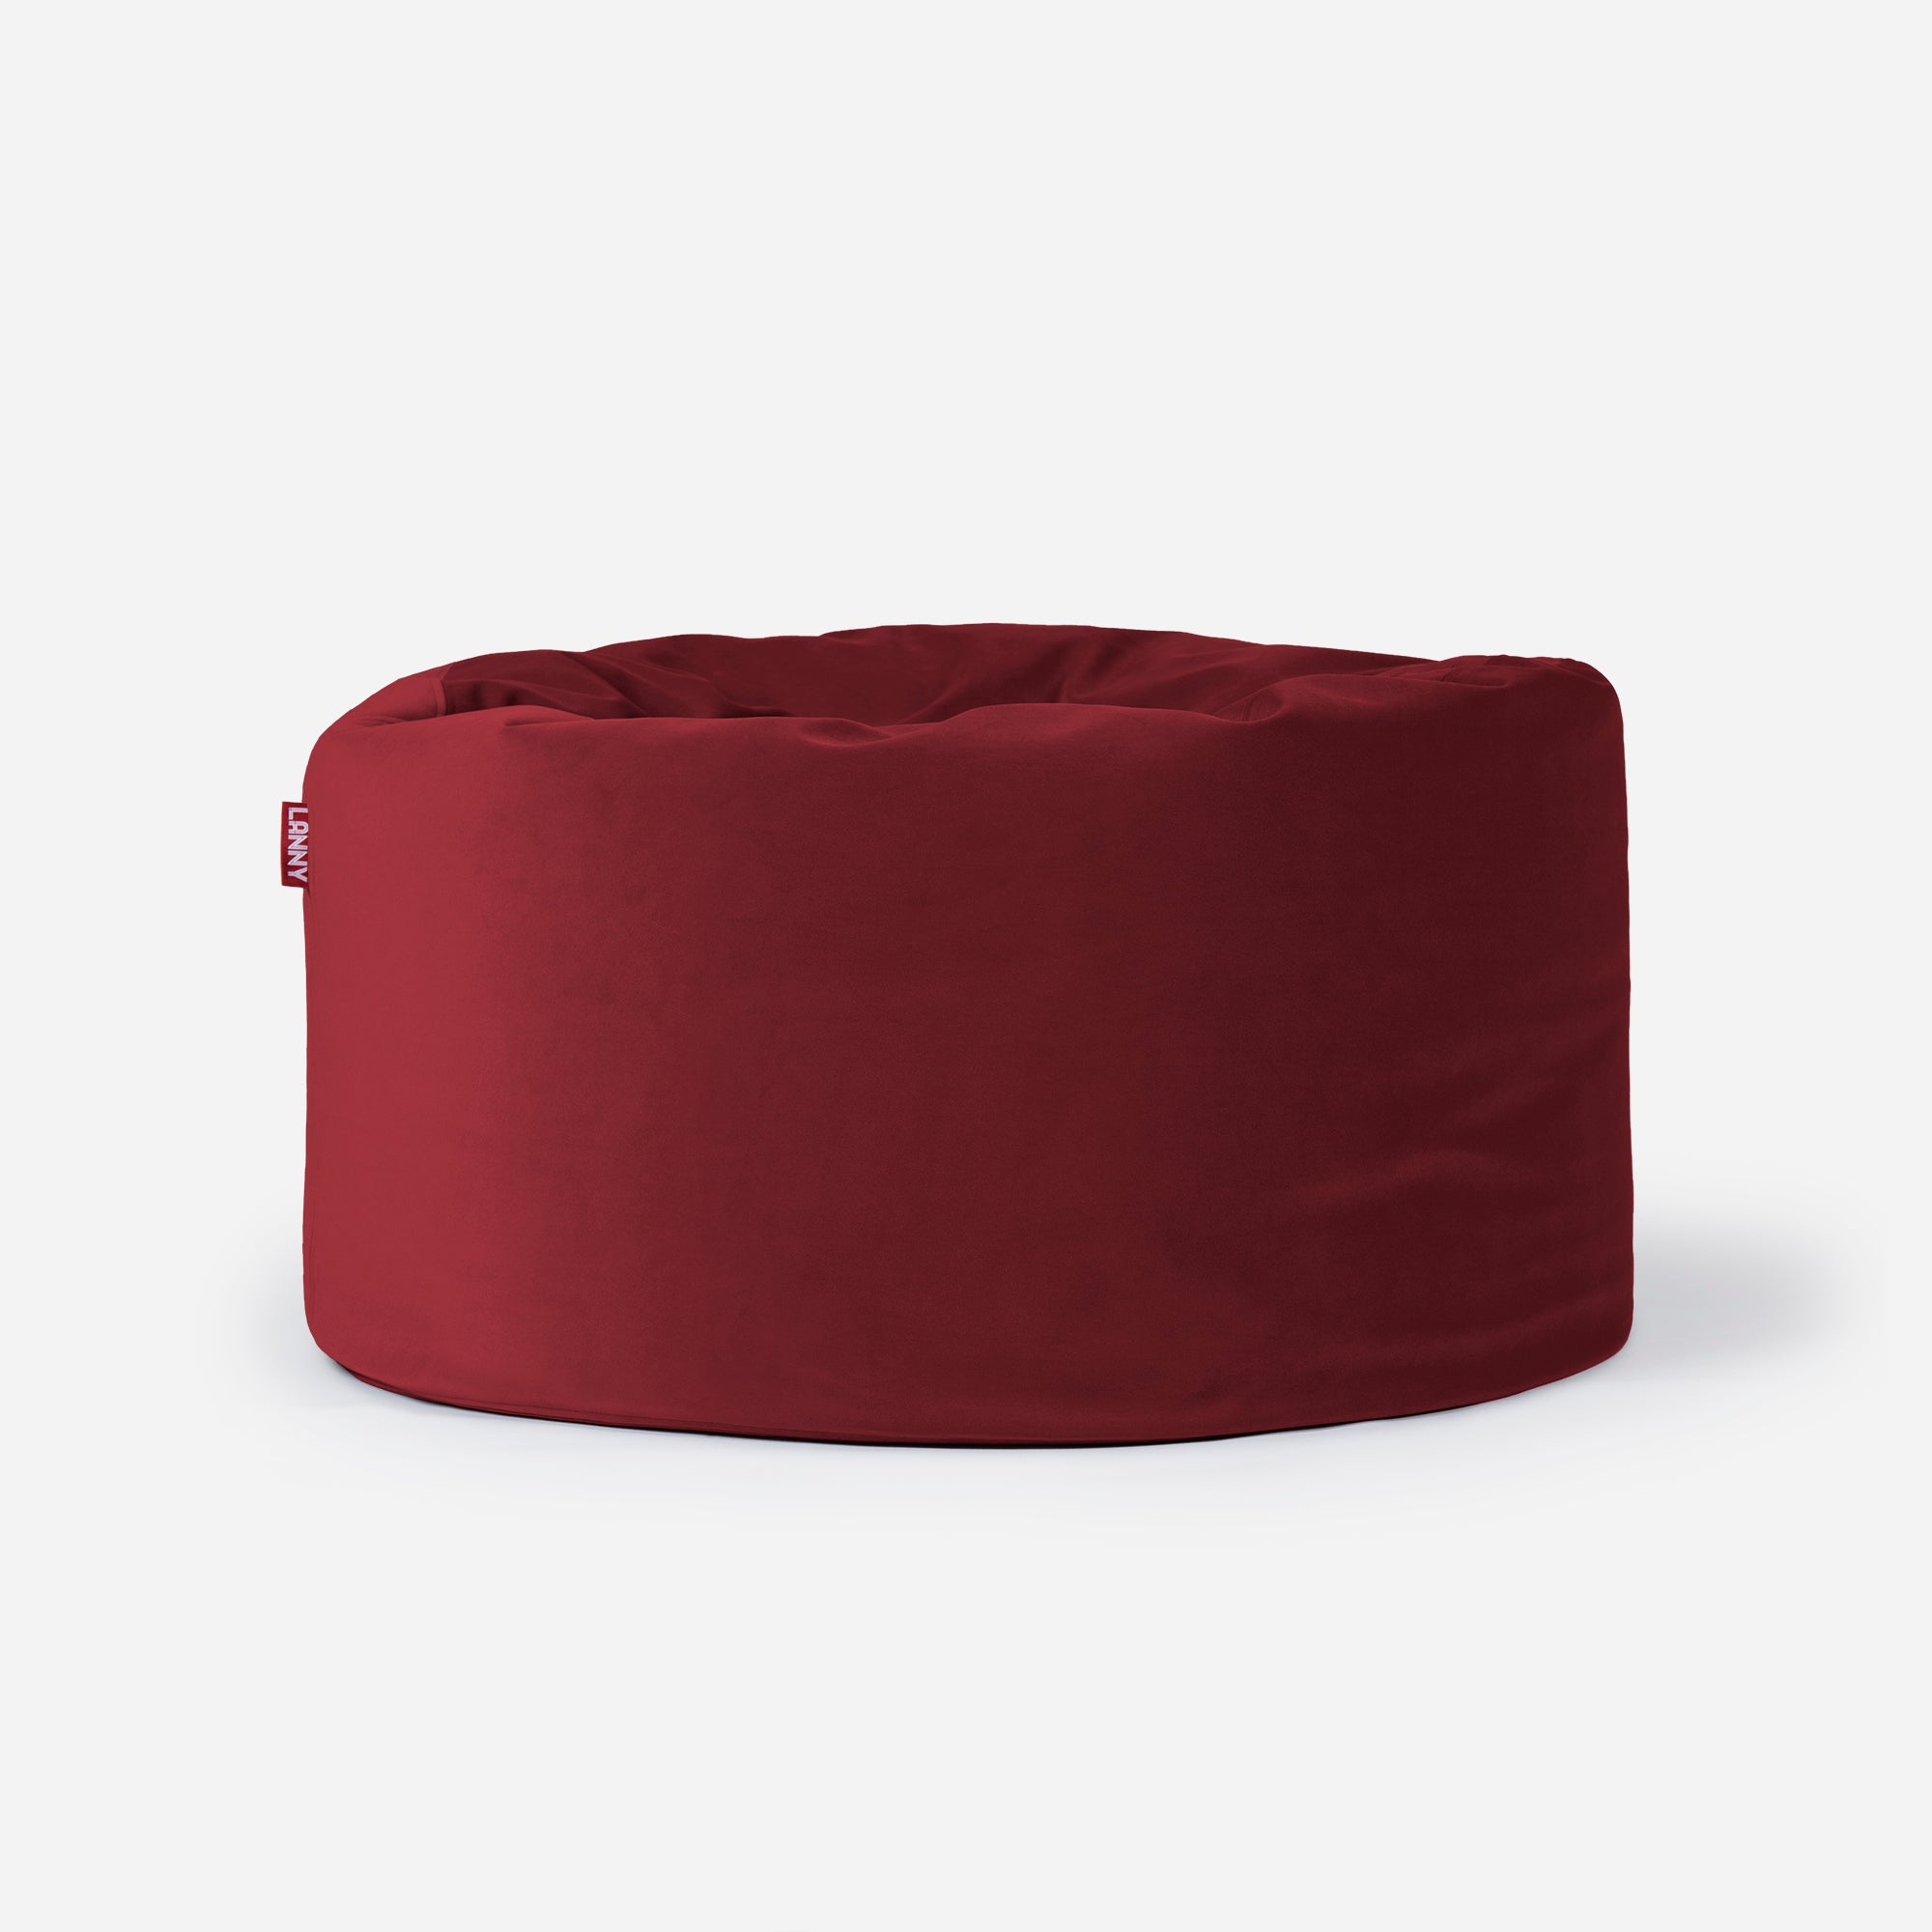 Medium Original Velvet Red Bean bag